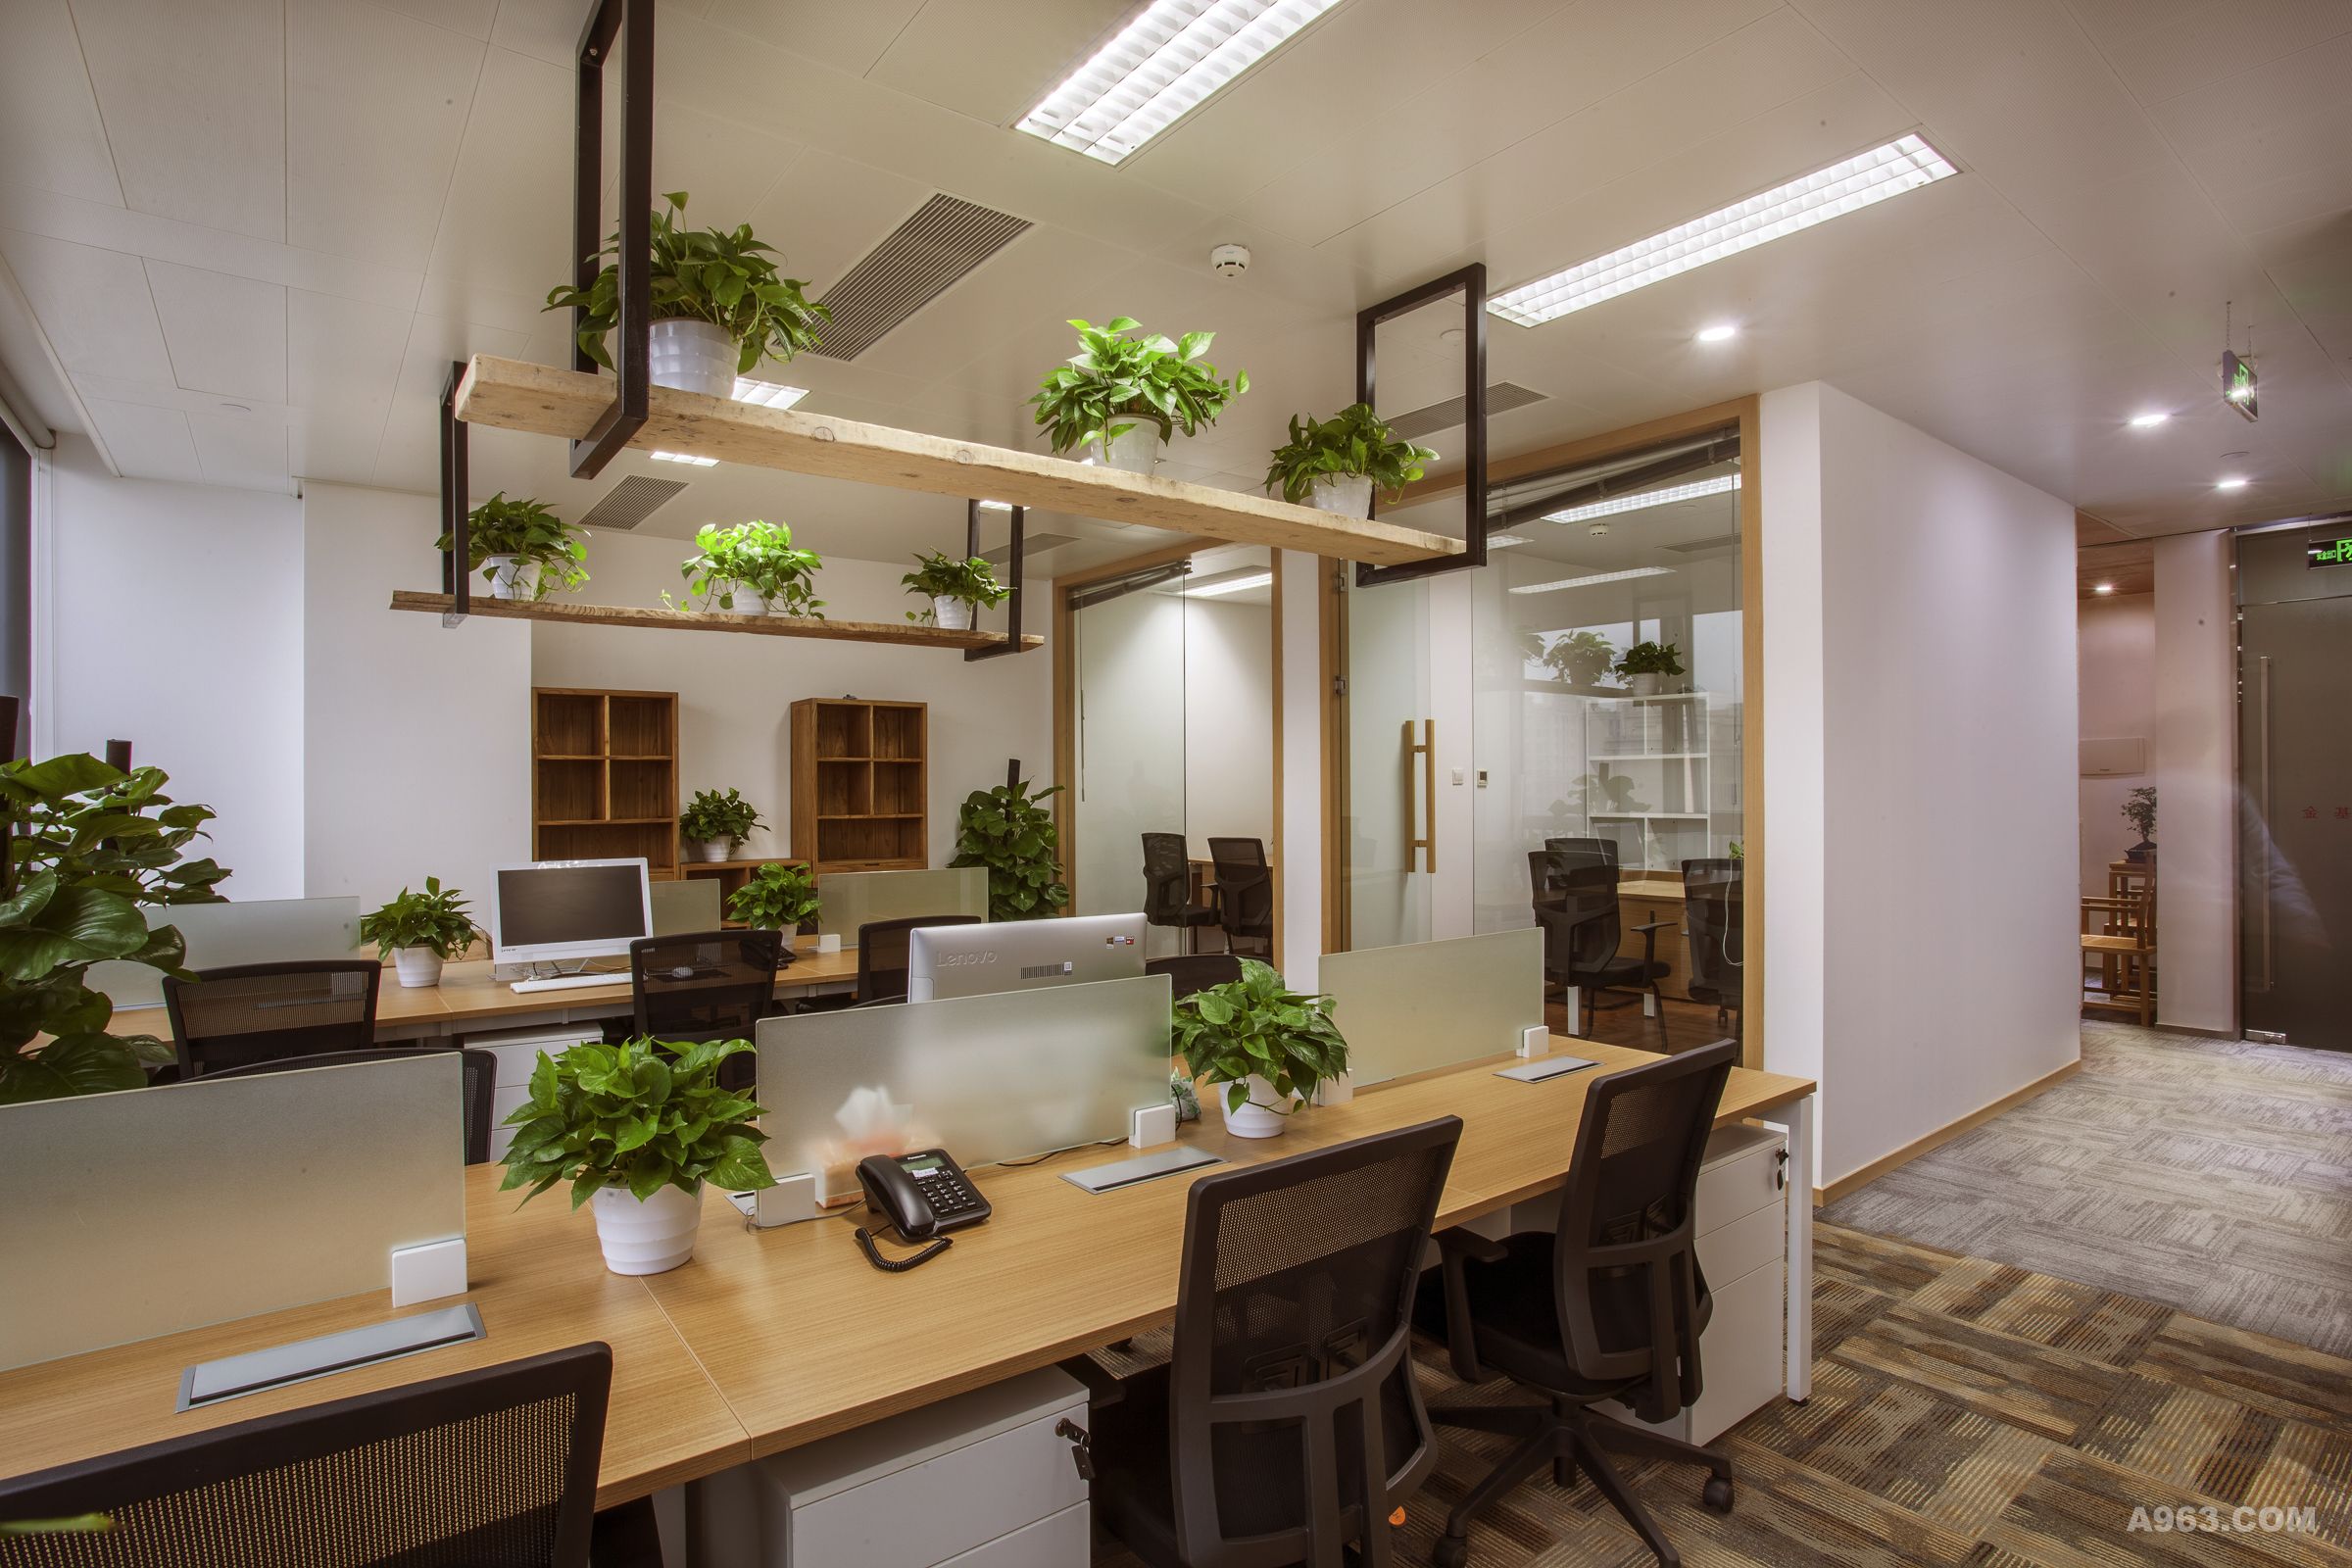 员工办公区域
布置于采光充足的区域，就是为了员工有最优的工作环境。设置温润的木质板与刚硬的矩管所搭配，上面放置绿色多肉植物，为员工带来一抹清新自然。
副总经理室及行政办公室抬高的设计，不仅暗喻行政级别的划分，更让整个空间“活”了。
在两侧分别设置书柜，望员工在工作之余一杯香浓的咖啡搭配一本营养丰富的书籍。待疲劳消散过后，又能充满热情全身心的投入工作之中。